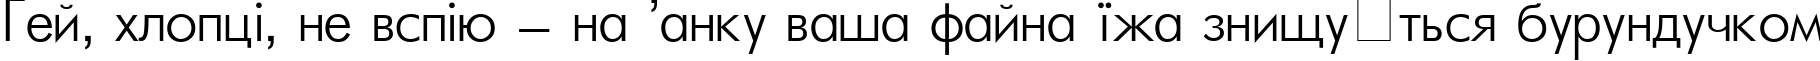 Пример написания шрифтом FuturaLight Light текста на украинском